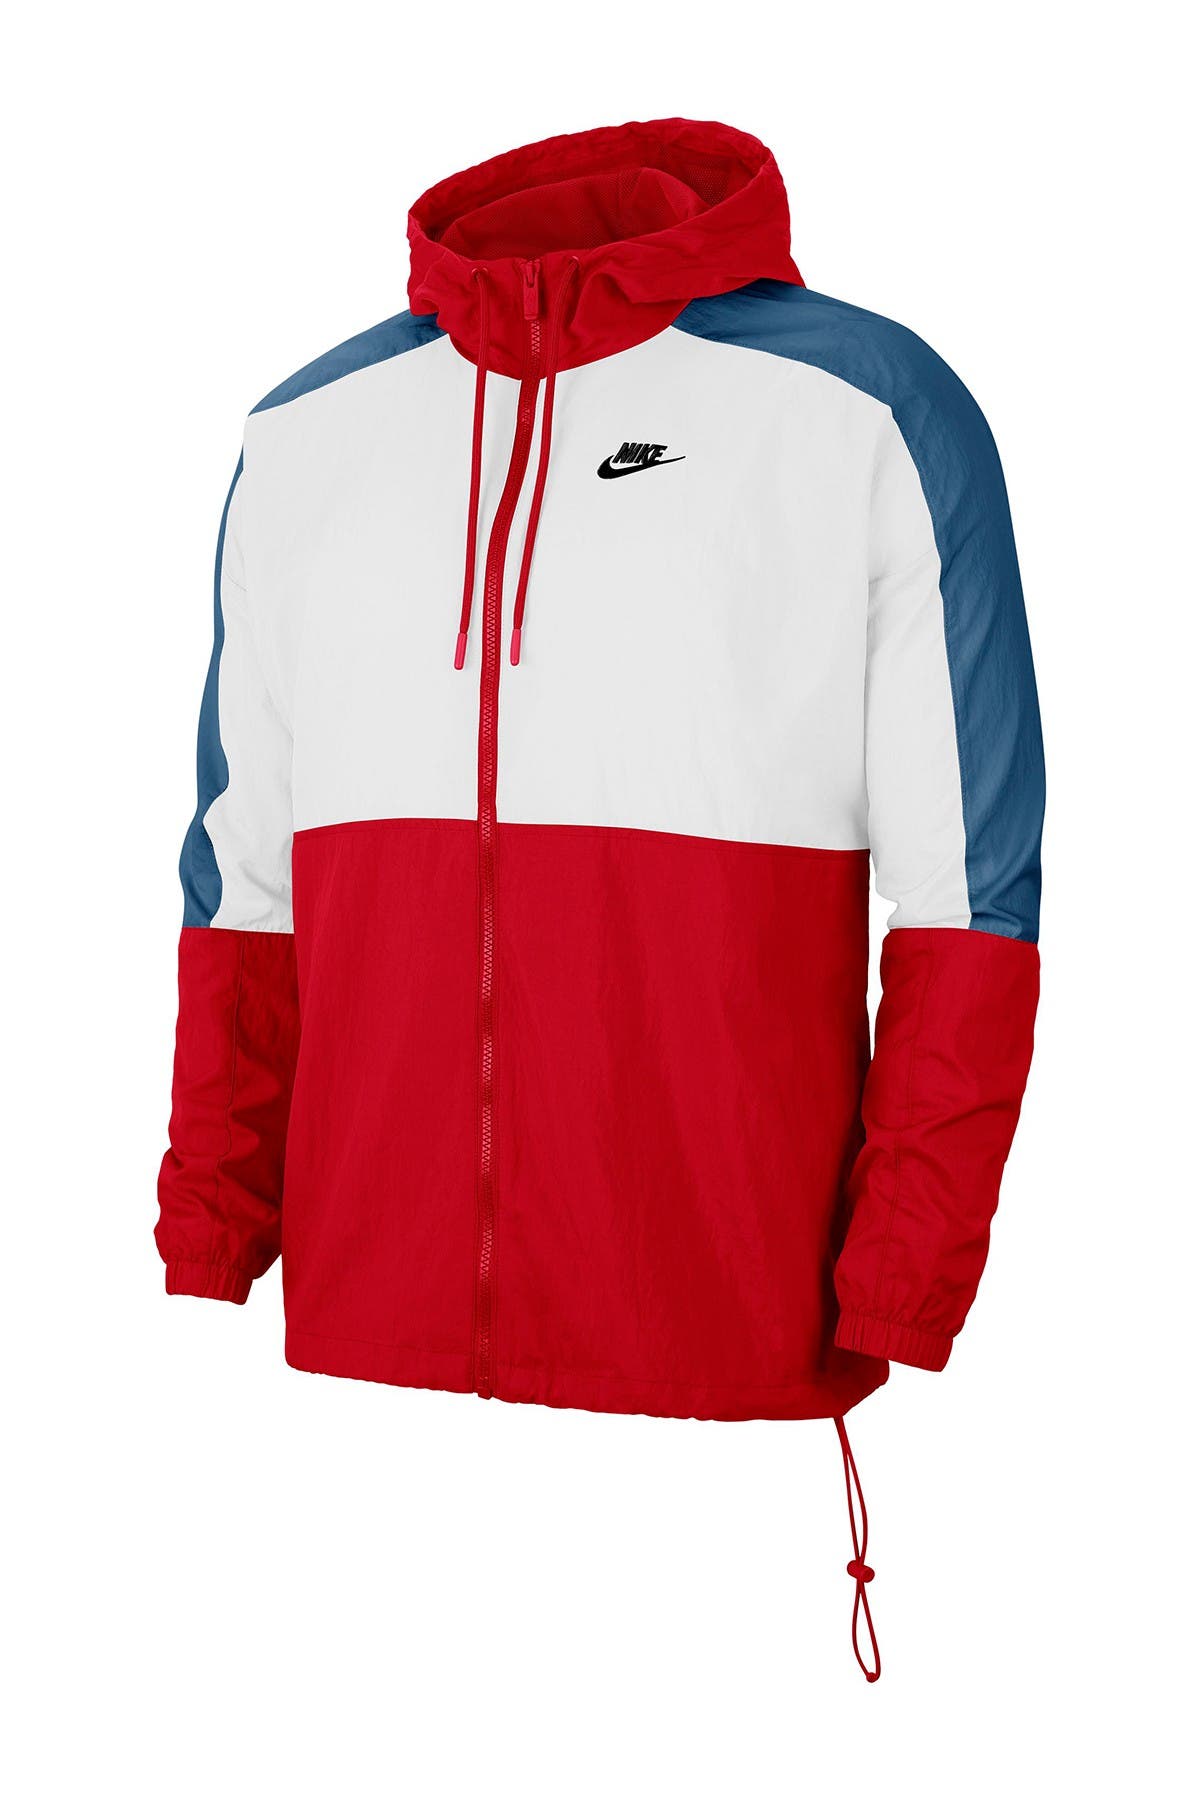 Nike | Colorblock Hooded Zip Jacket | Nordstrom Rack